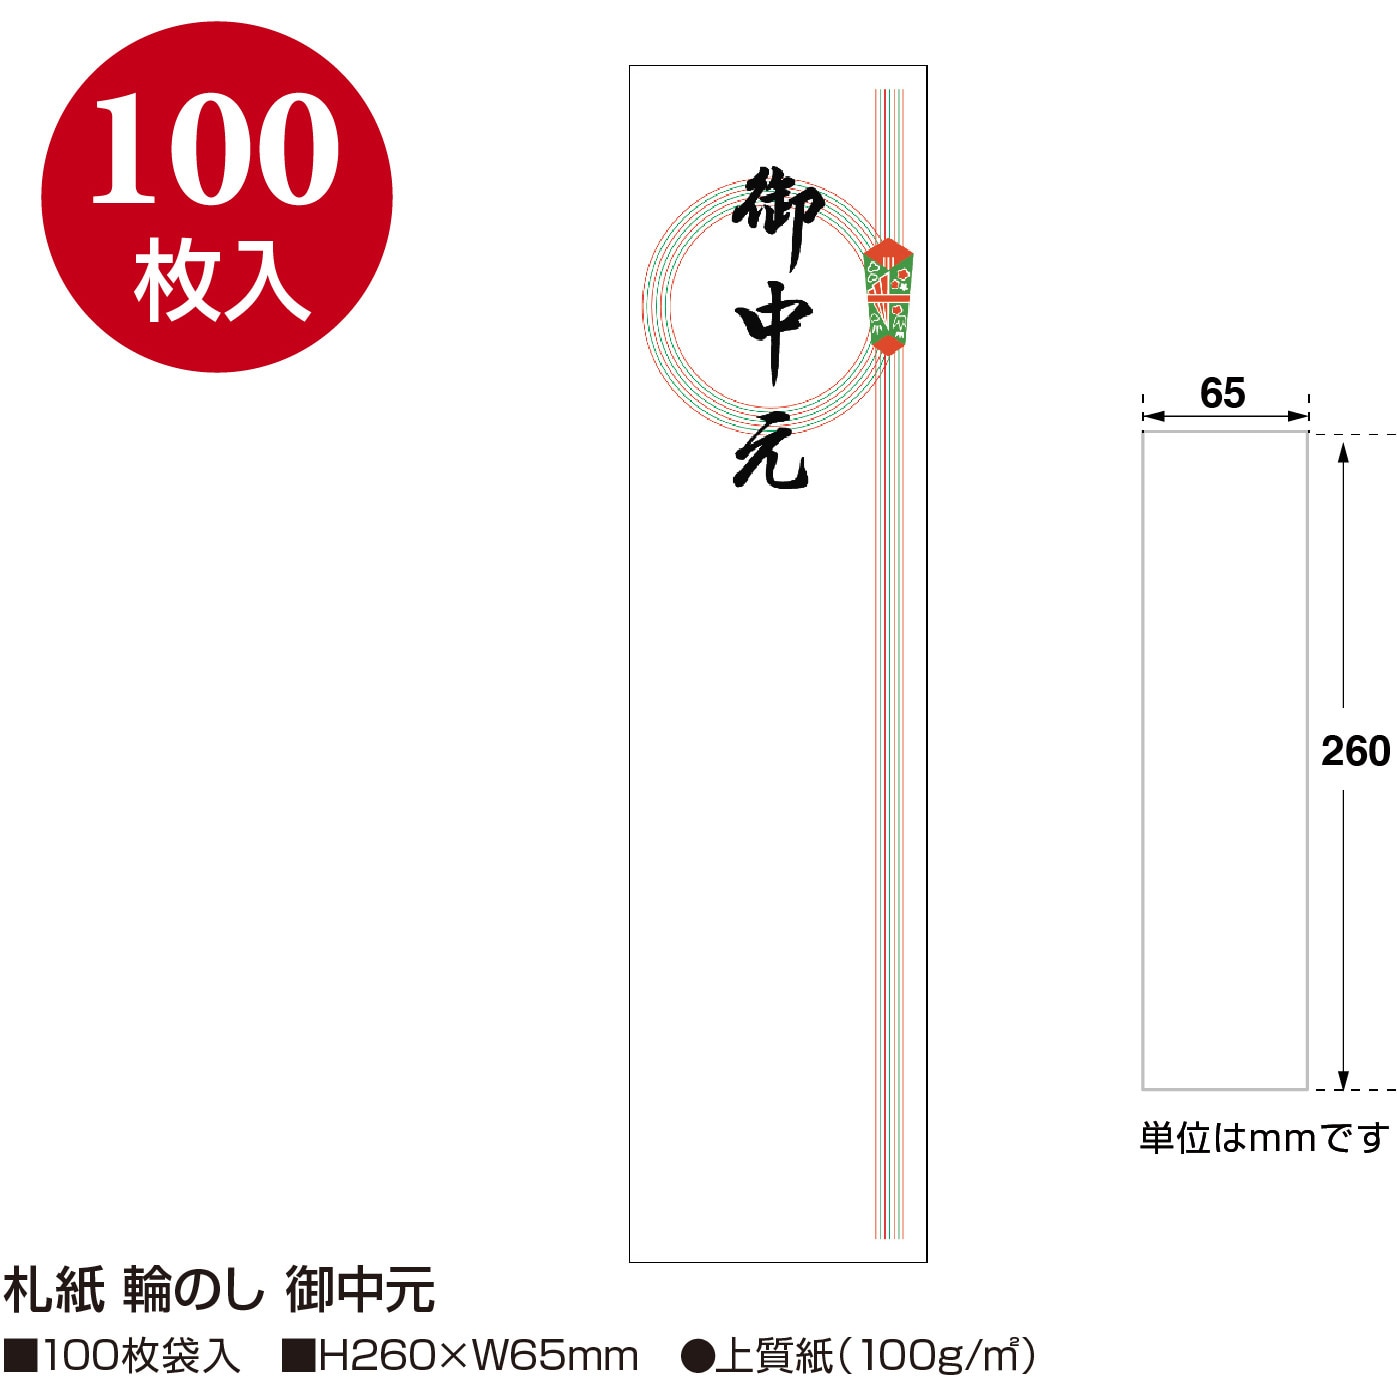 のし紙 京印 黄水引 B5 100枚入 タカ印 2-248 - ノート・紙製品